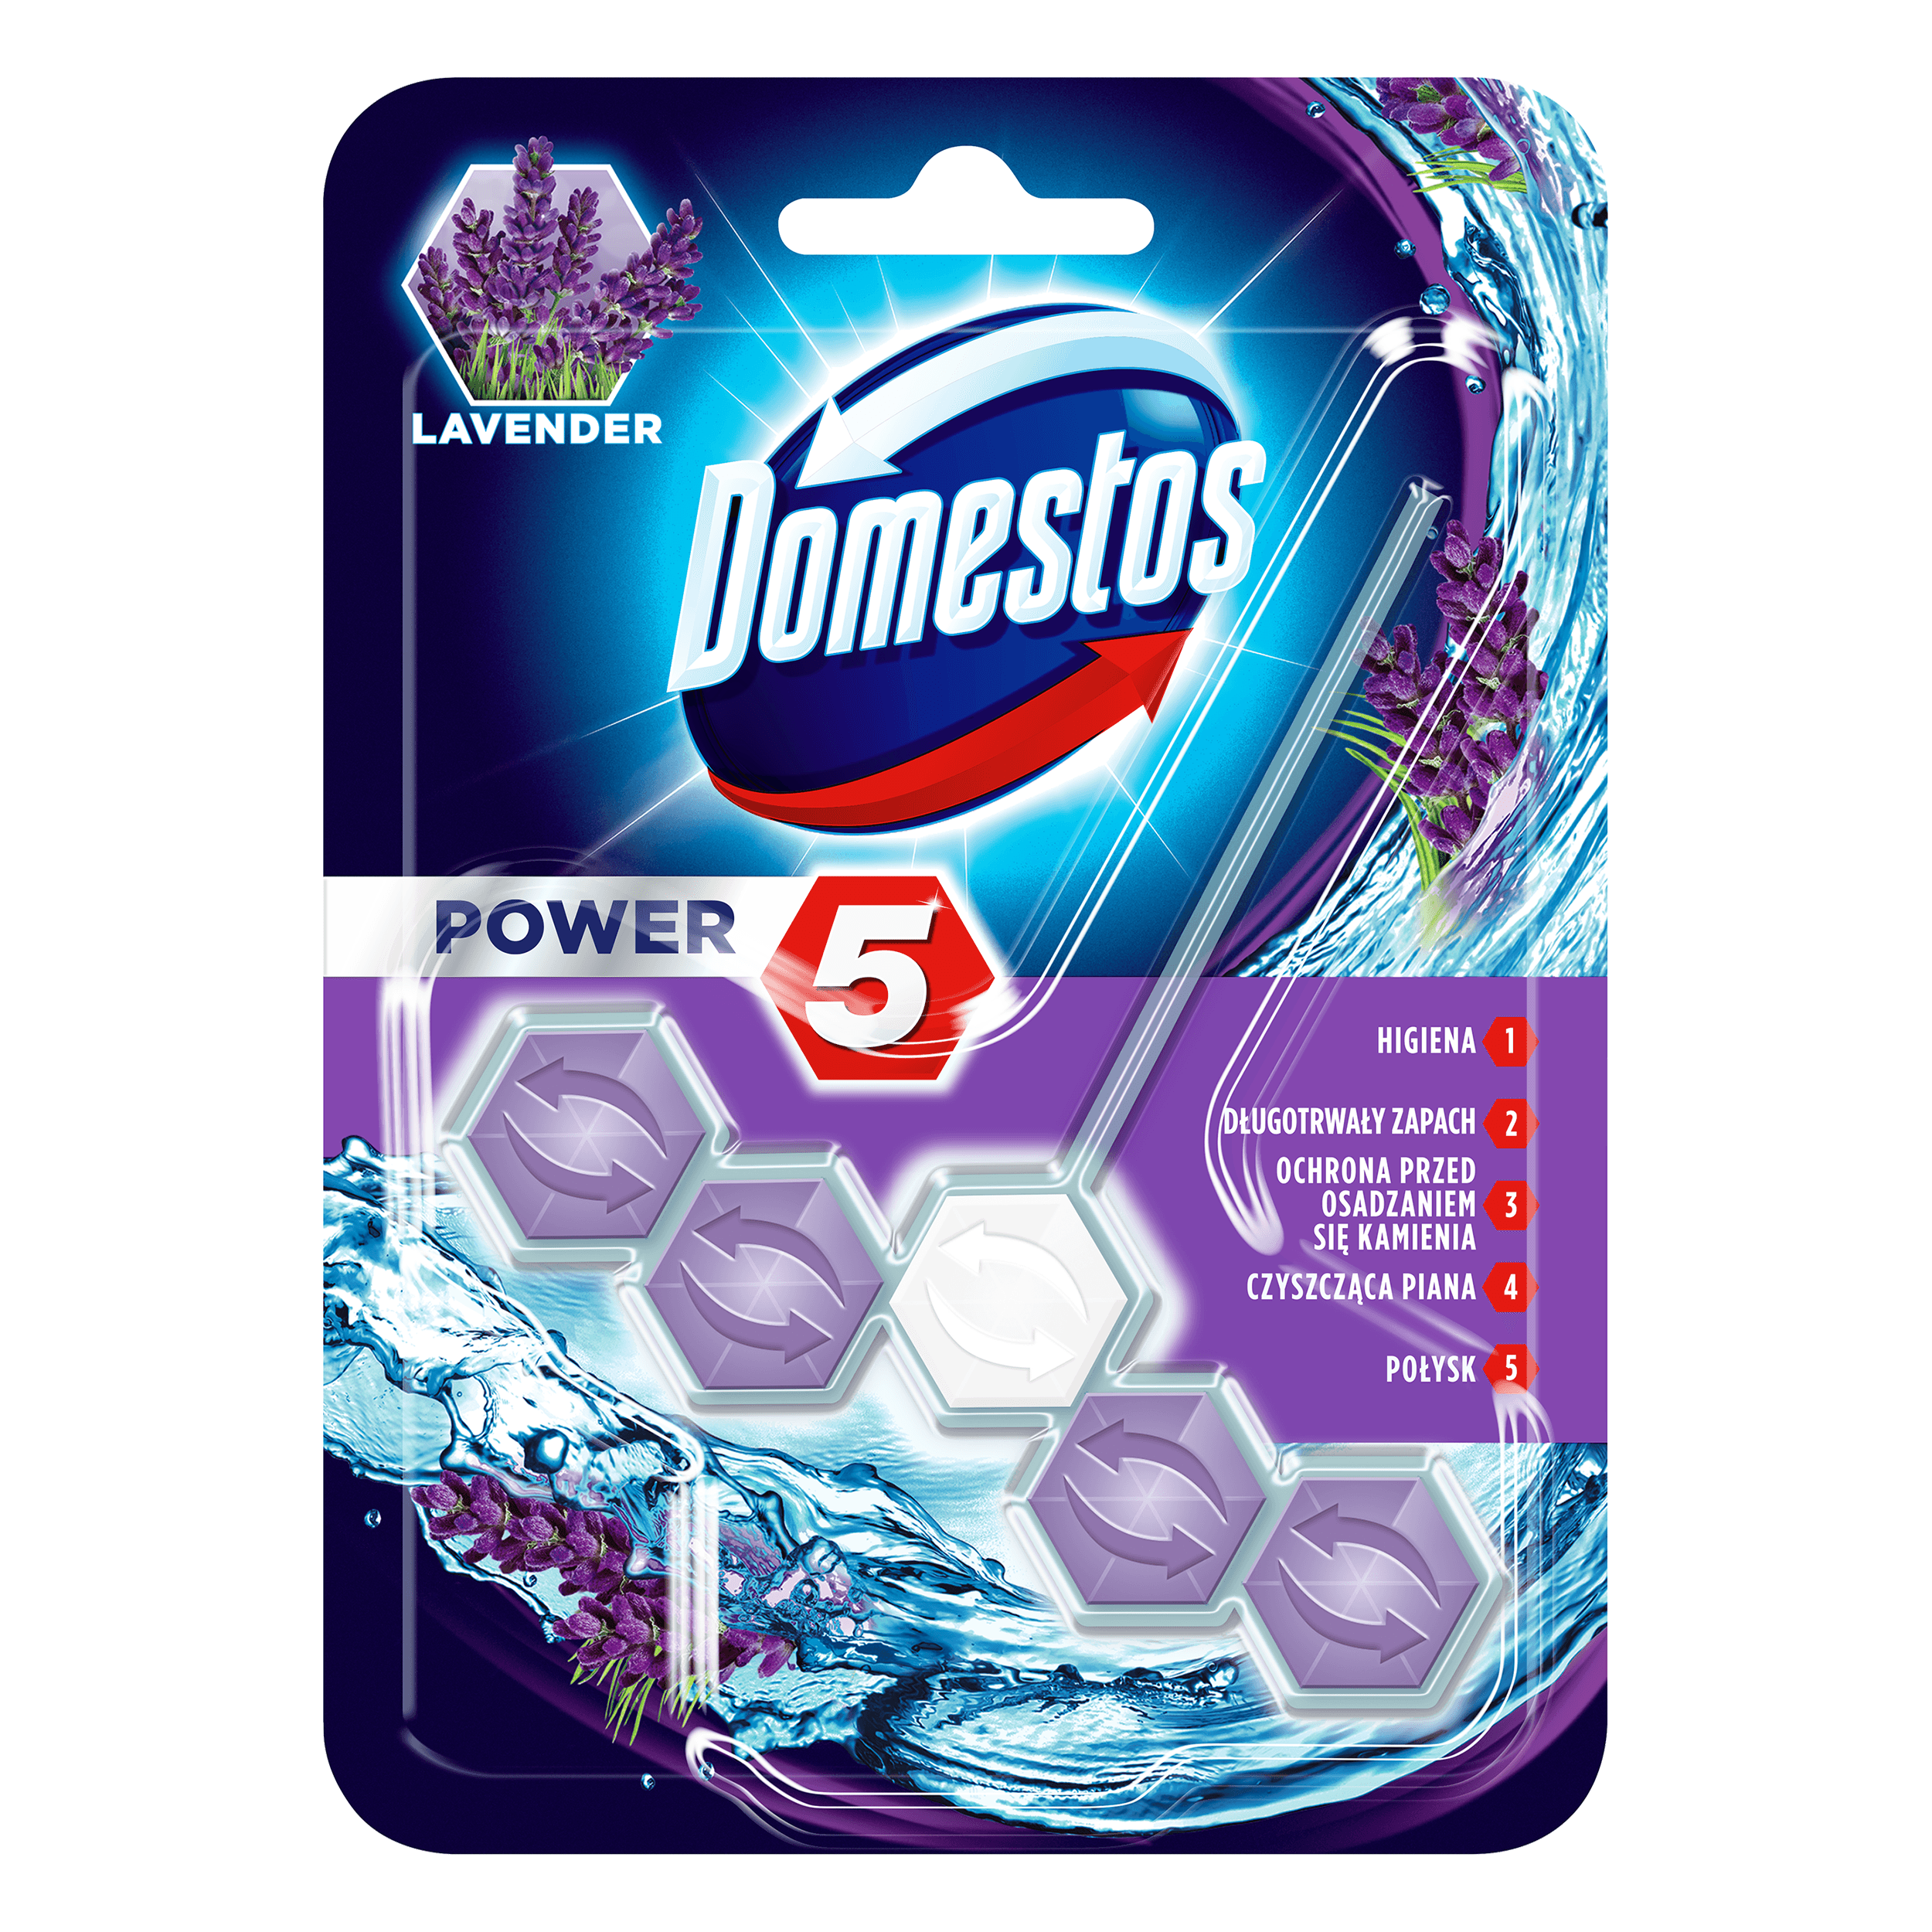 Kostka zapachowa do toalet Domestos Power 5, 55g - Lavender